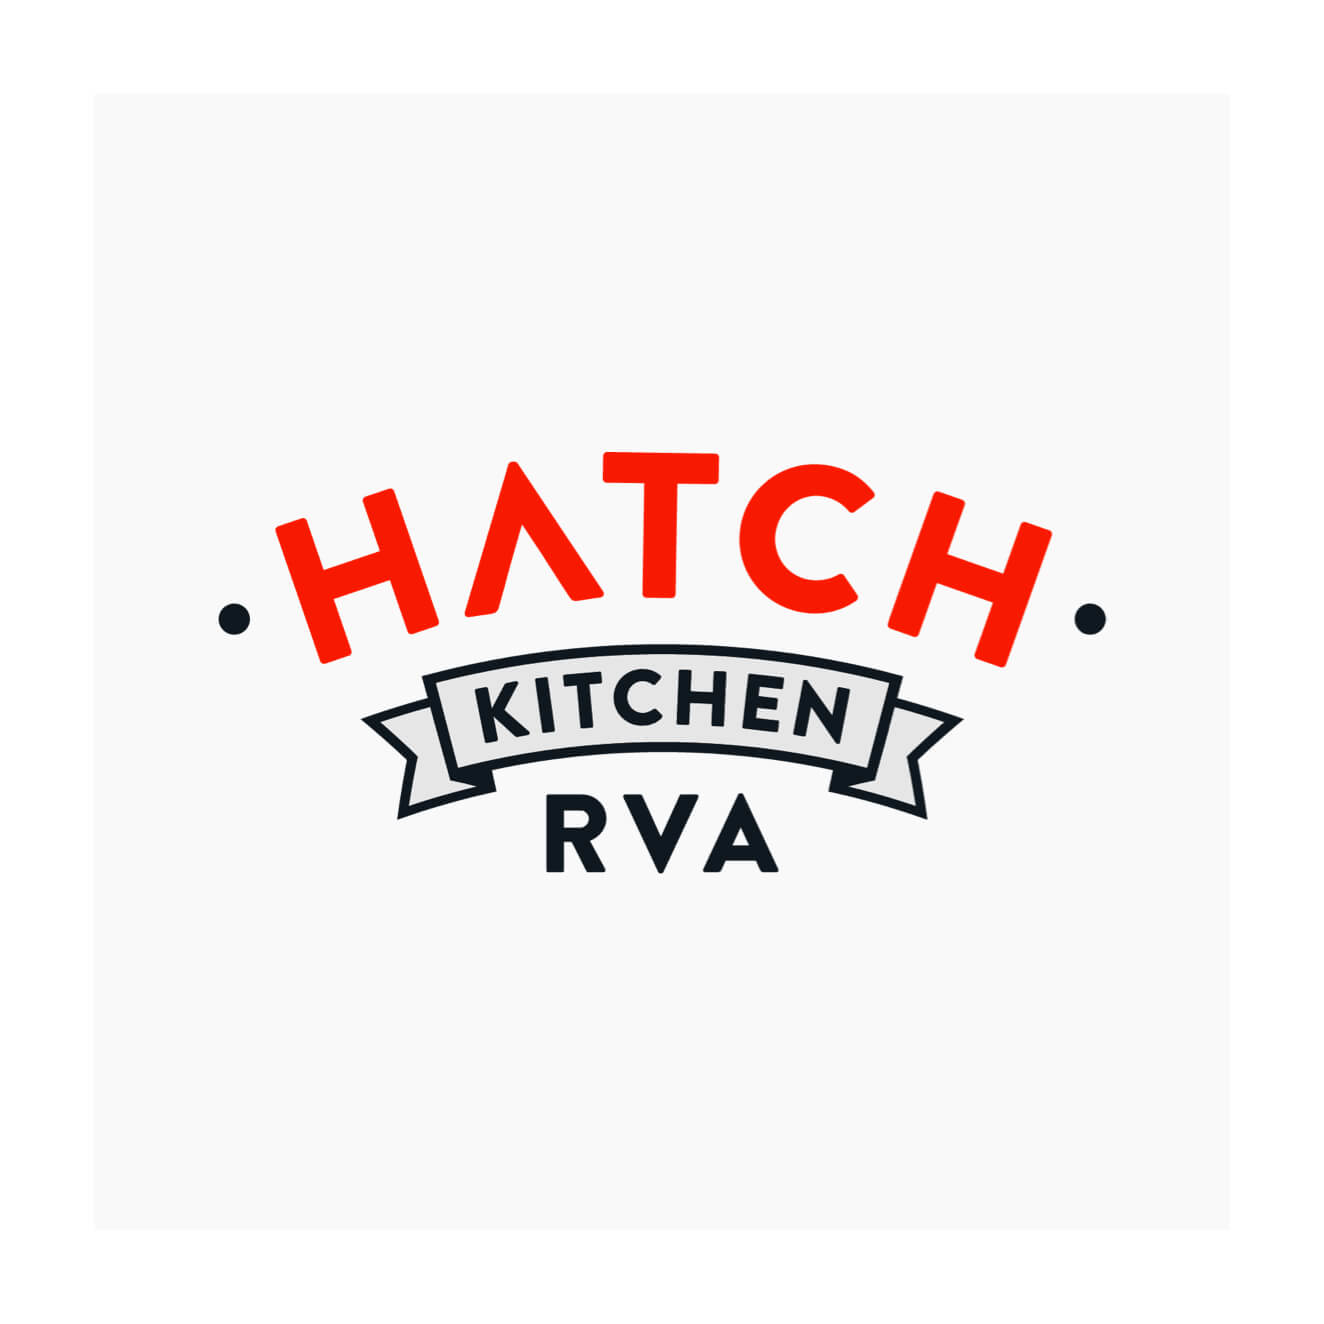 Hatch Kitchen RVA logo